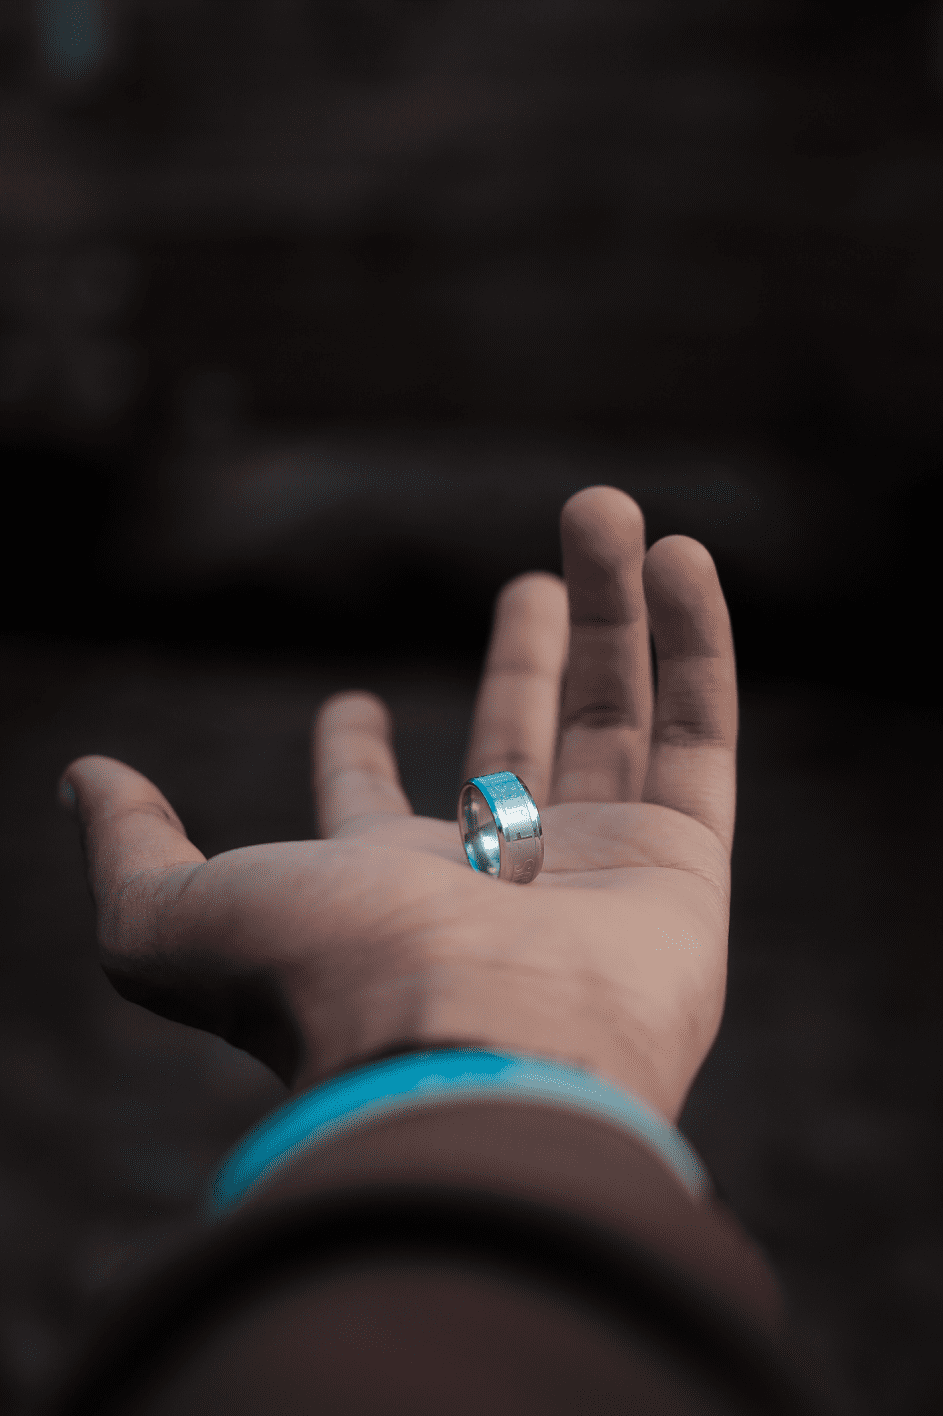 Nach einigen Monaten hielt Kemal um meine Hand an und ich sagte ja. | Quelle: Pexels